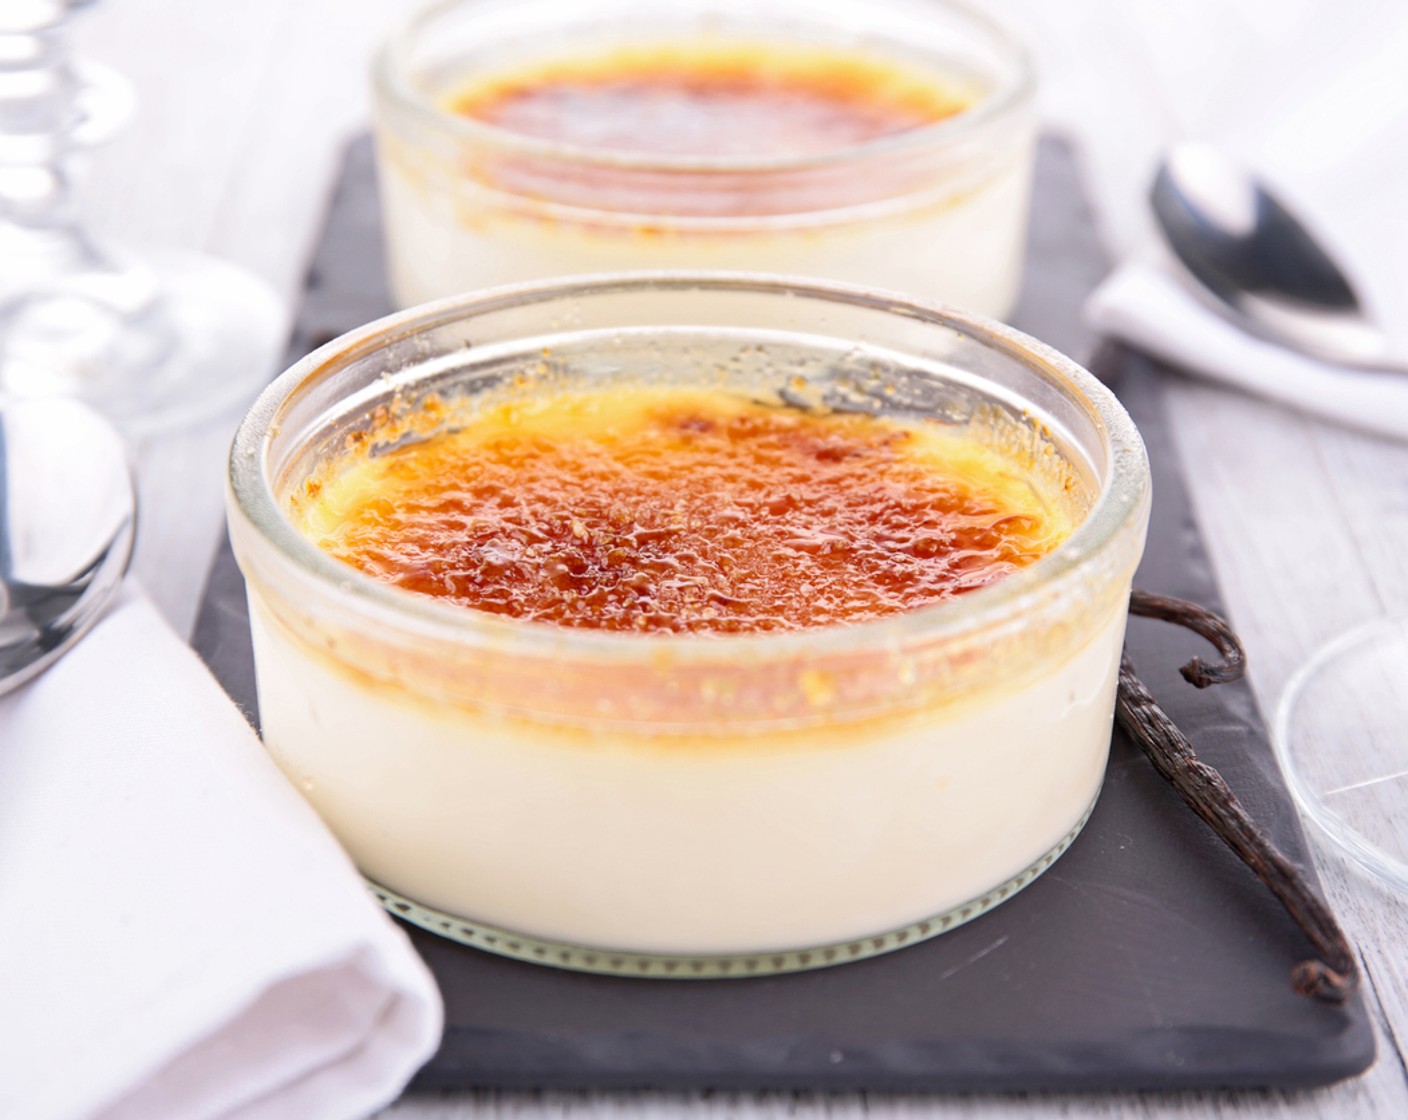 Schritt 5 Vor dem Servieren die Crème Brûlée mit Zucker (wenig) bestreuen und mit dem Bunsenbrenner karamellisieren.